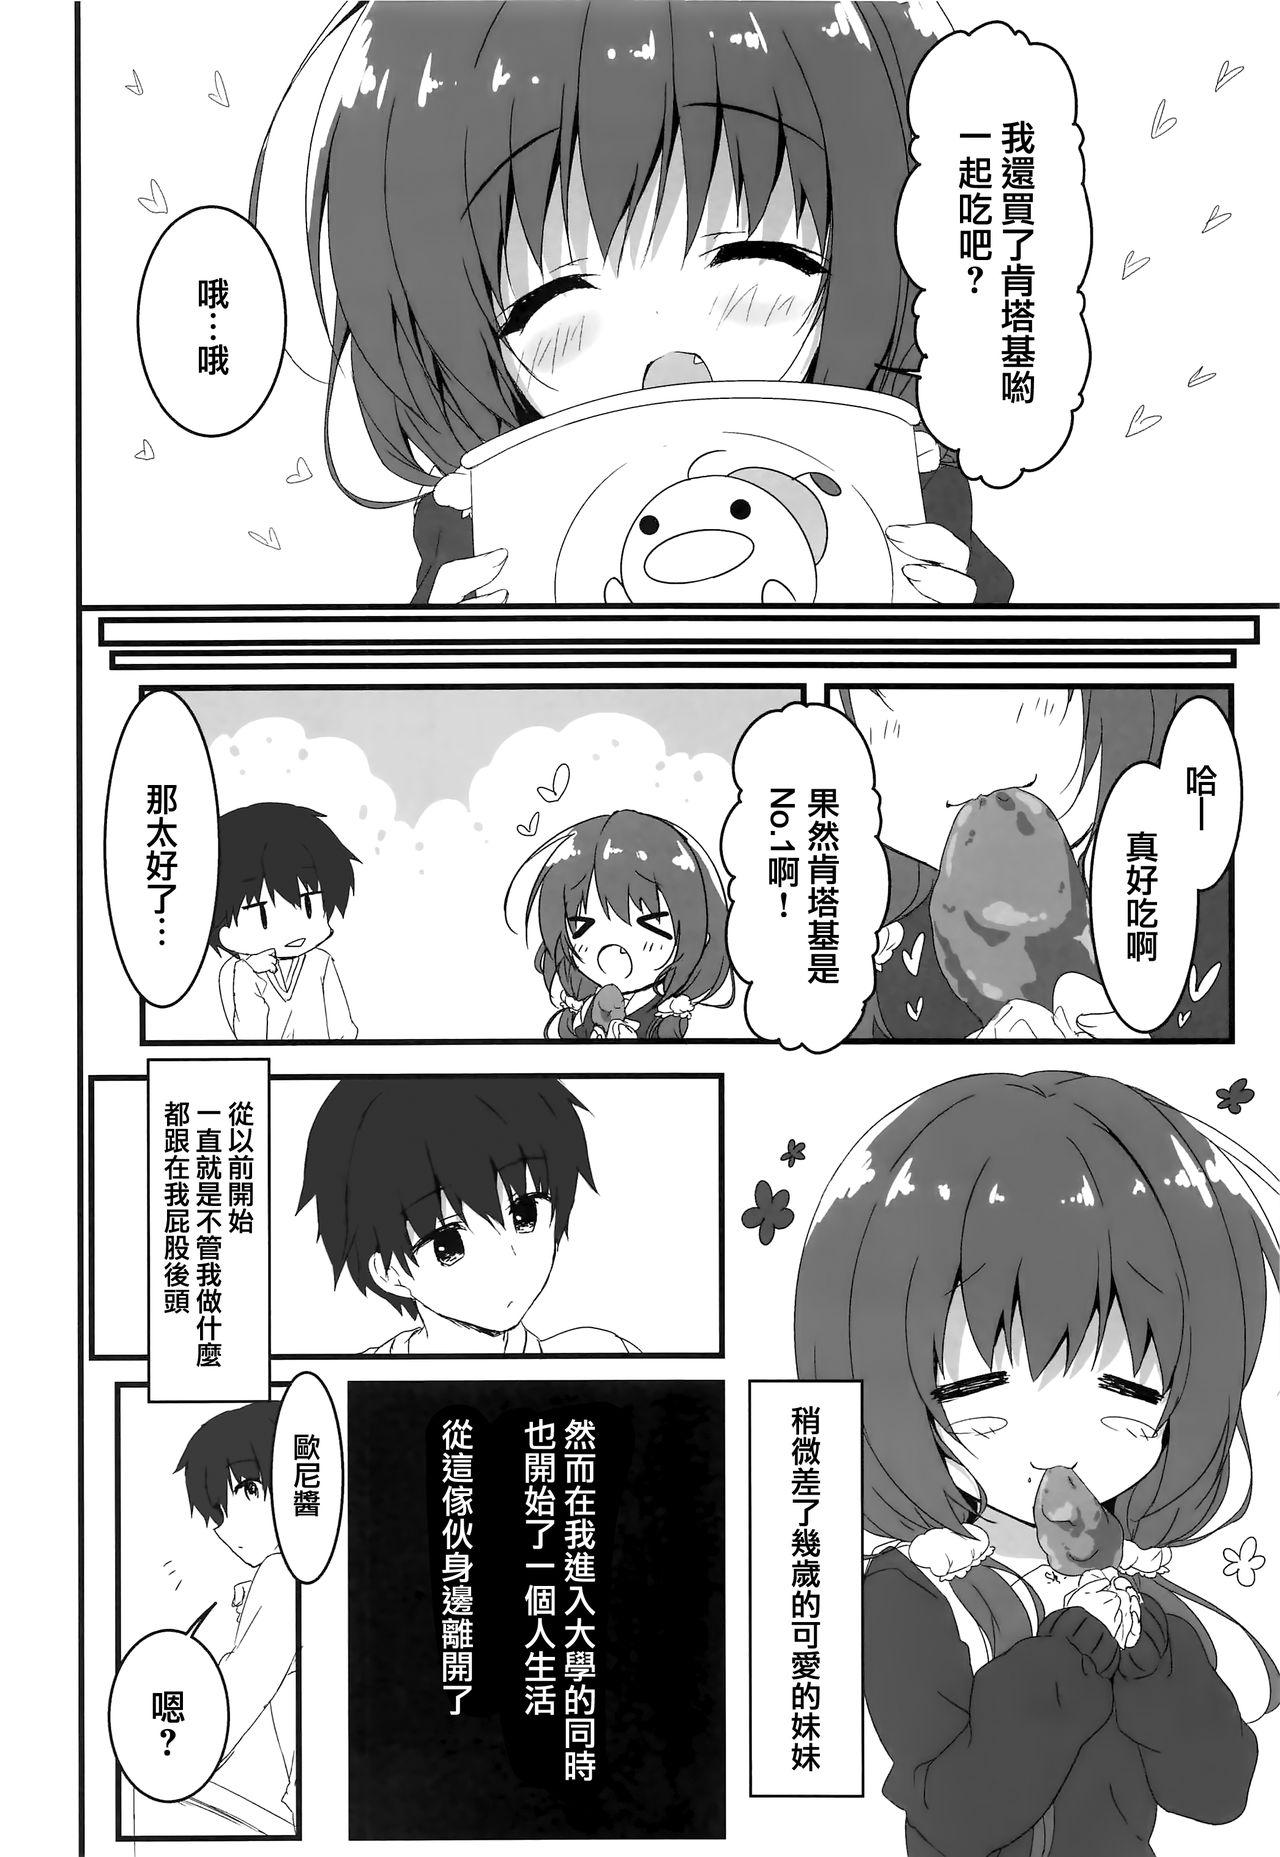 Groping Gomennasai, Onii-chan ga Suki desu. - Original Fat - Page 6